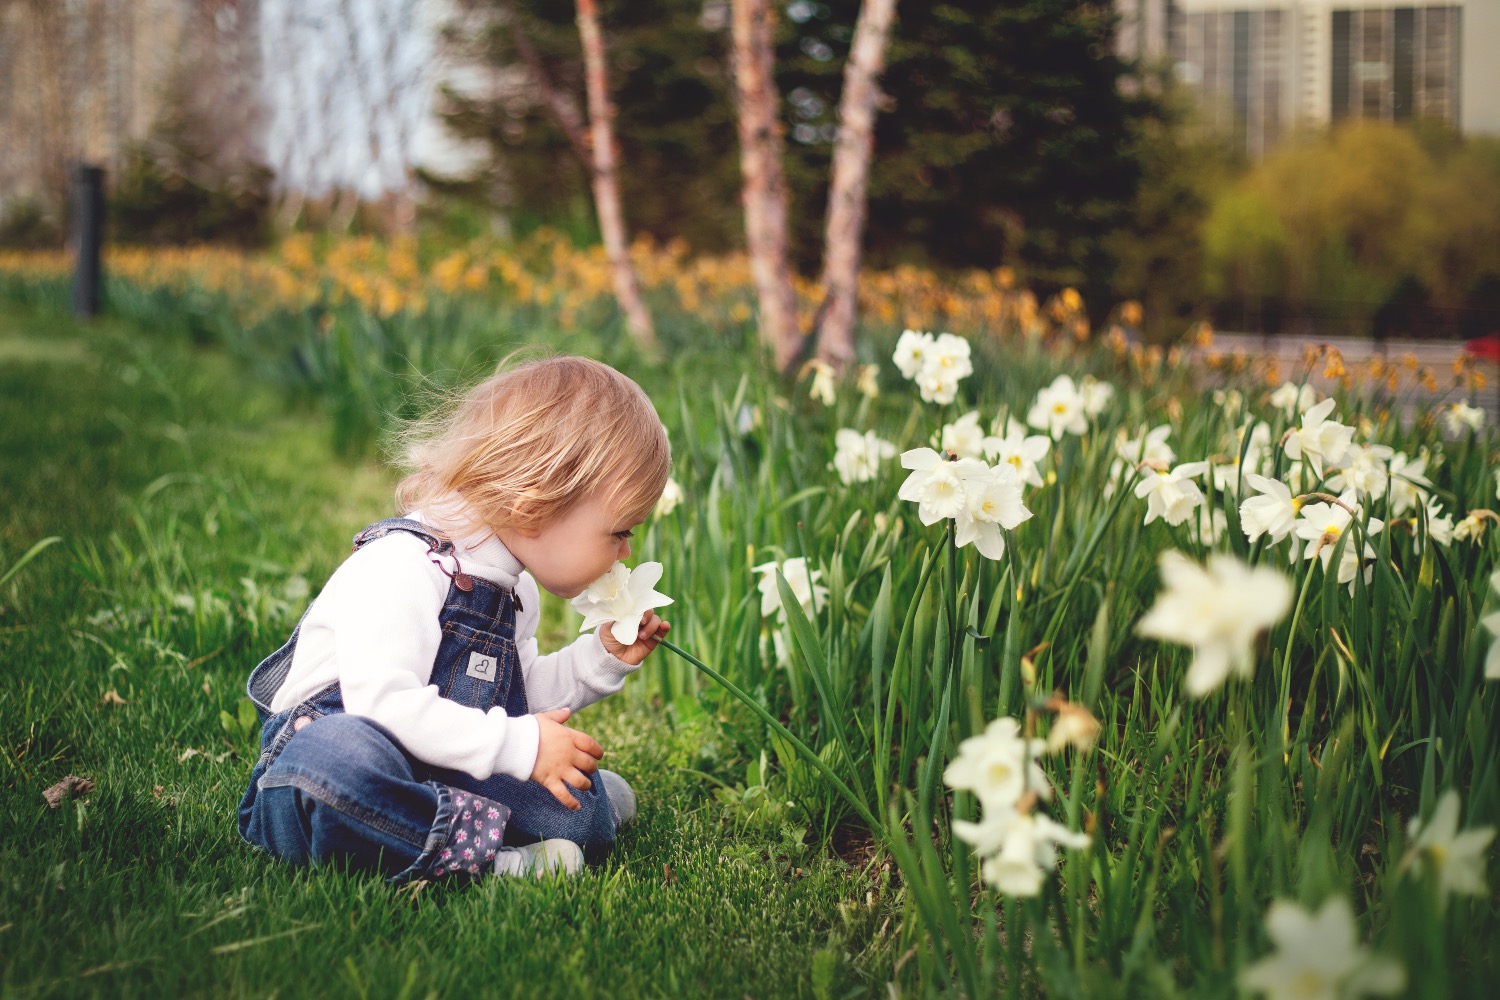 Titelbild zur Idee für die Beschäftigung mit Kindern 'Natur erleben und Blumen riechen'